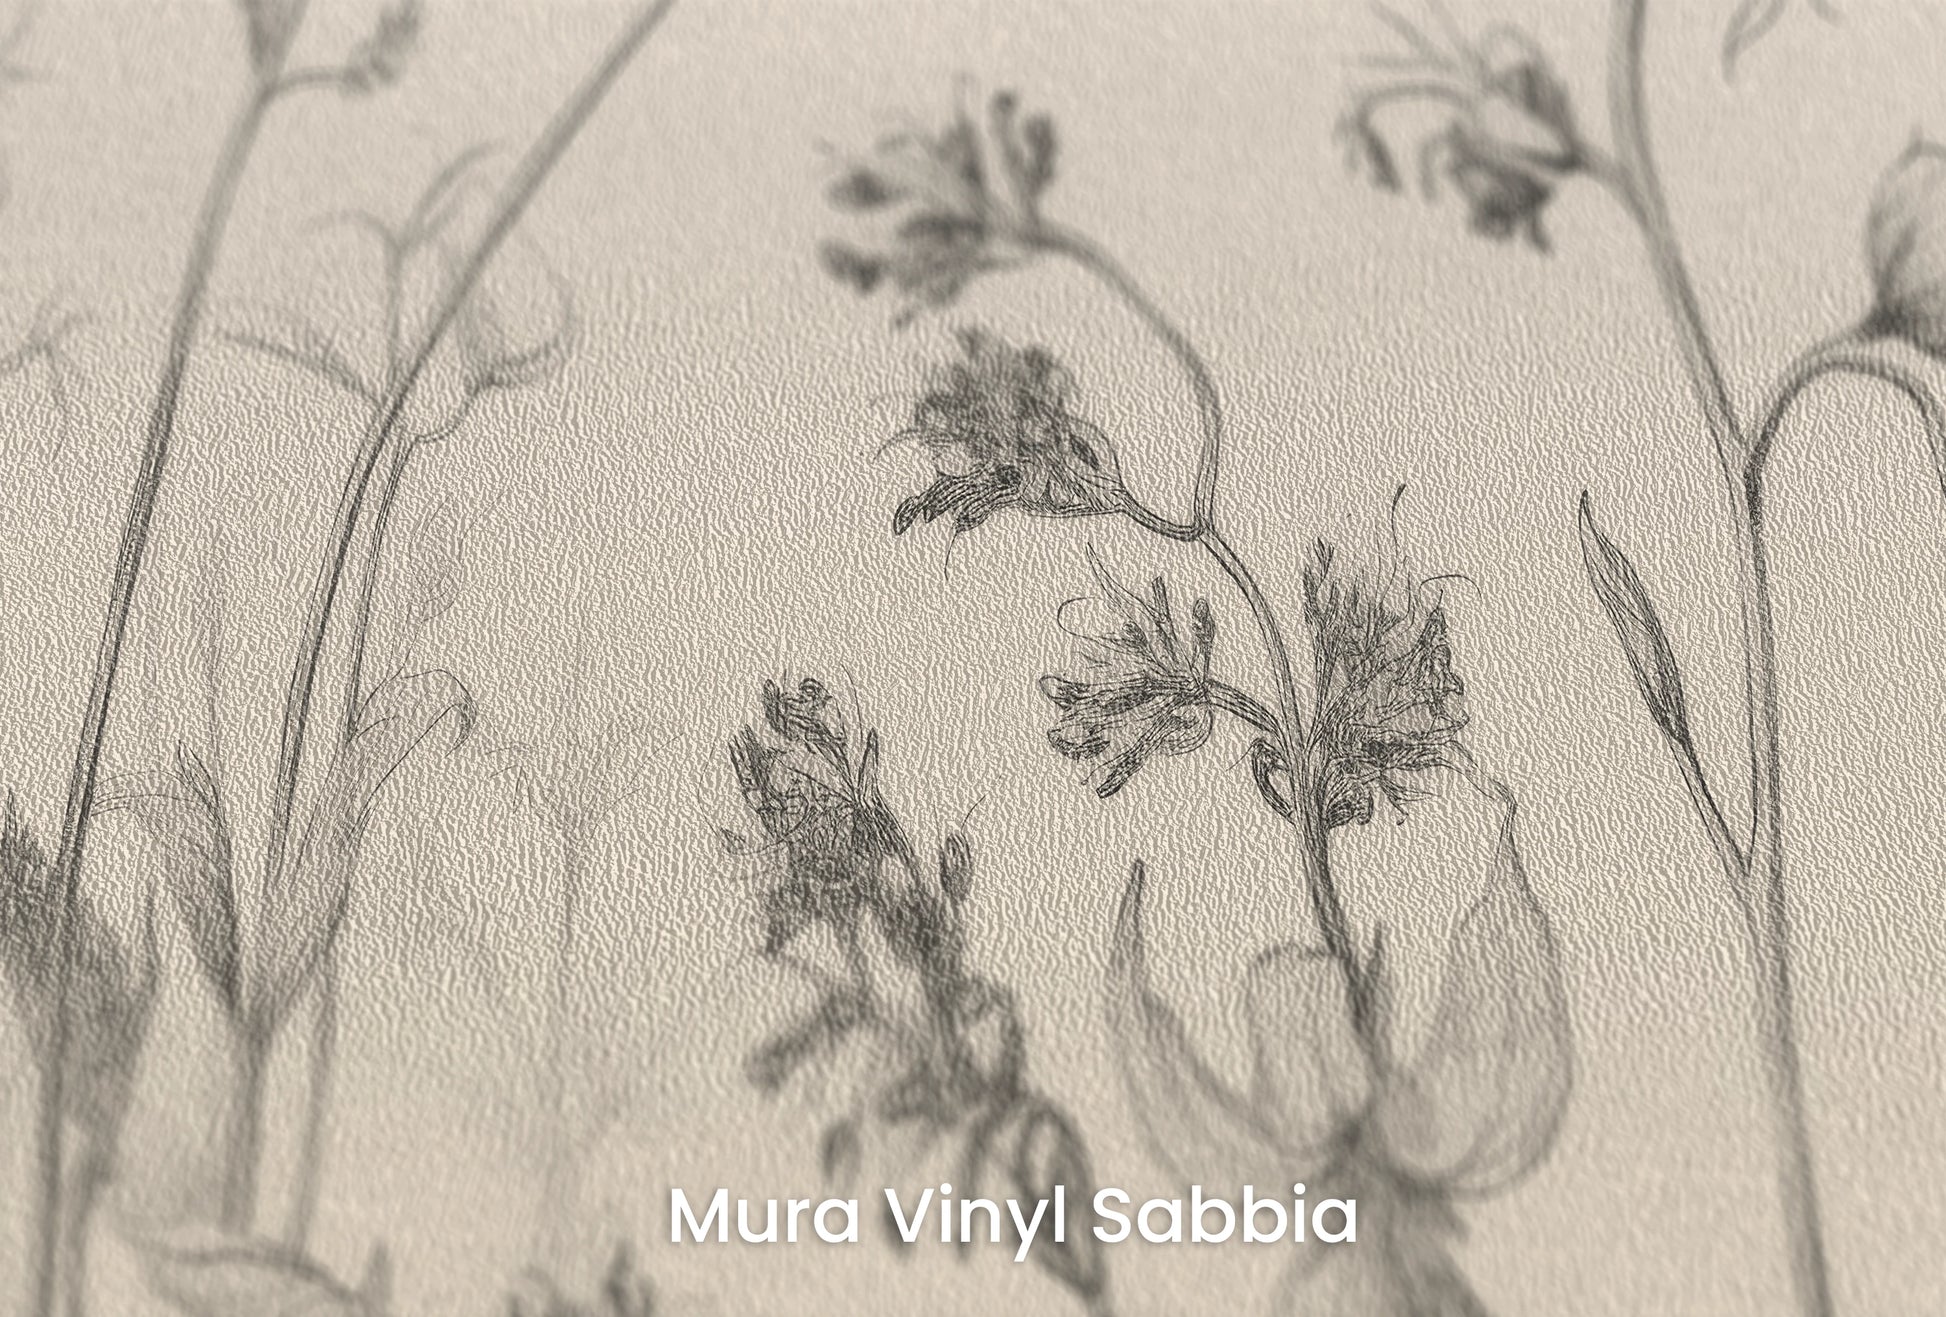 Zbliżenie na artystyczną fototapetę o nazwie Blossom Array na podłożu Mura Vinyl Sabbia struktura grubego ziarna piasku.